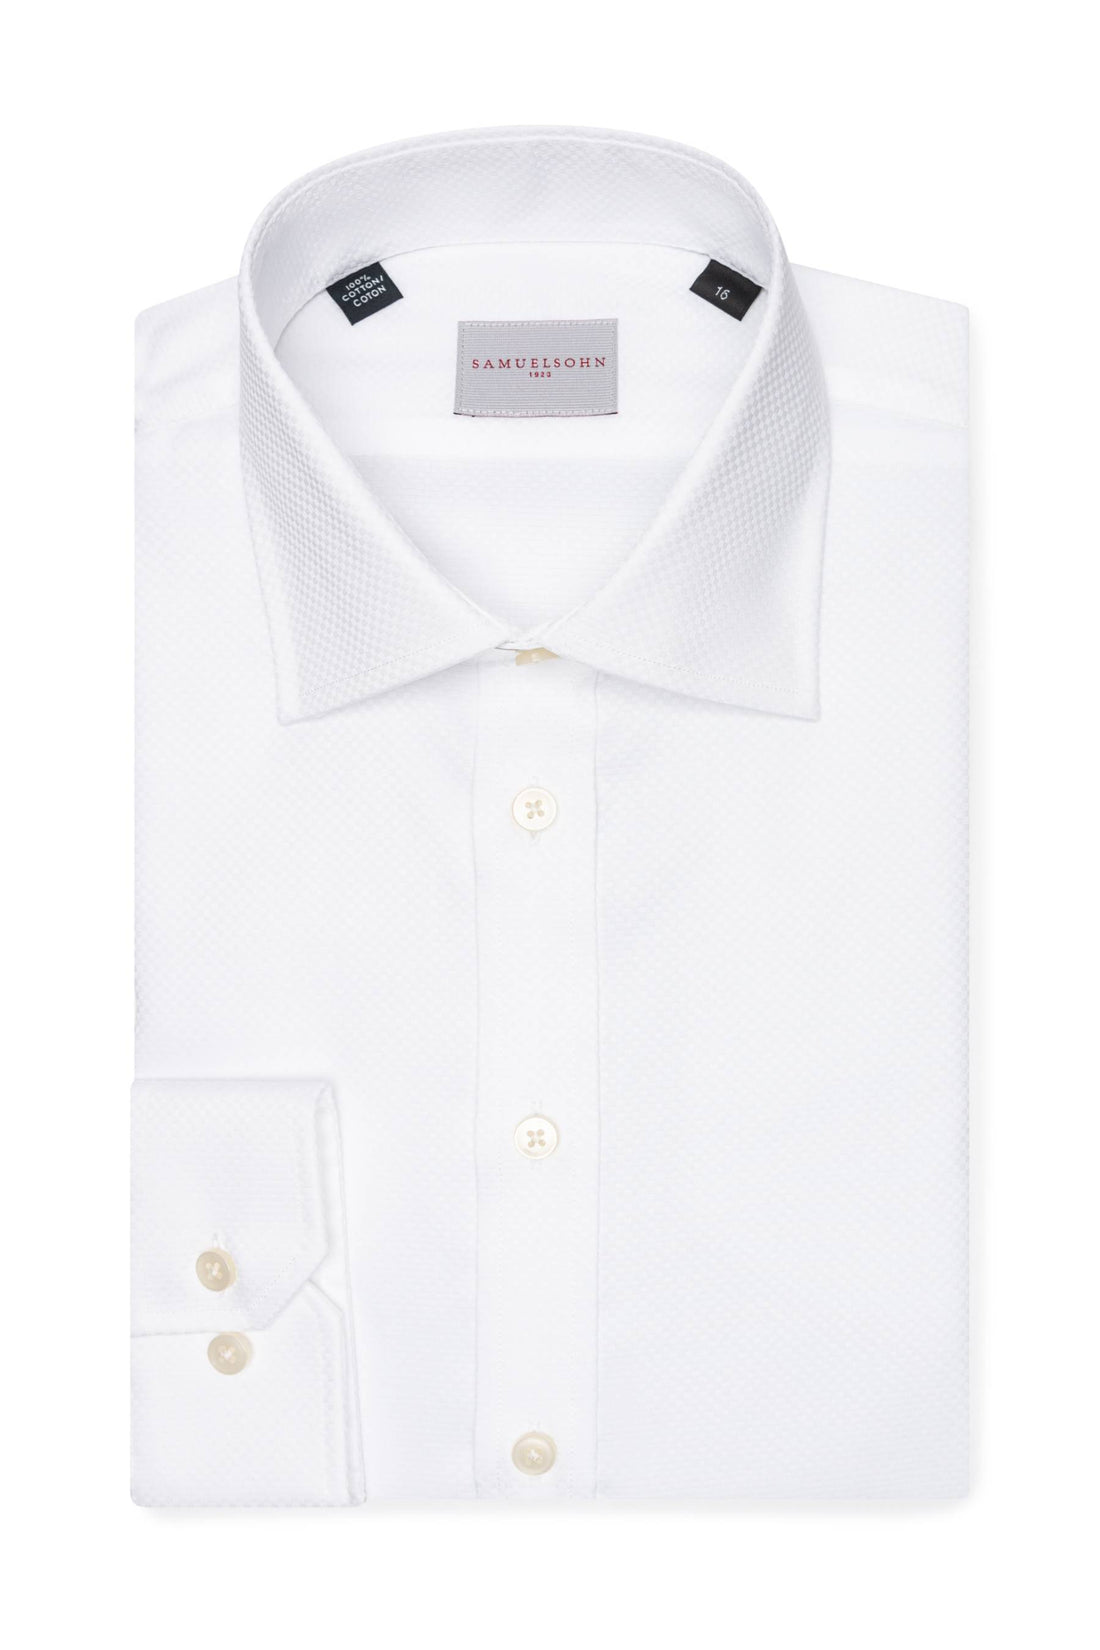 Samuelsohn White Dobby Contemporary Fit Easy Care Shirt